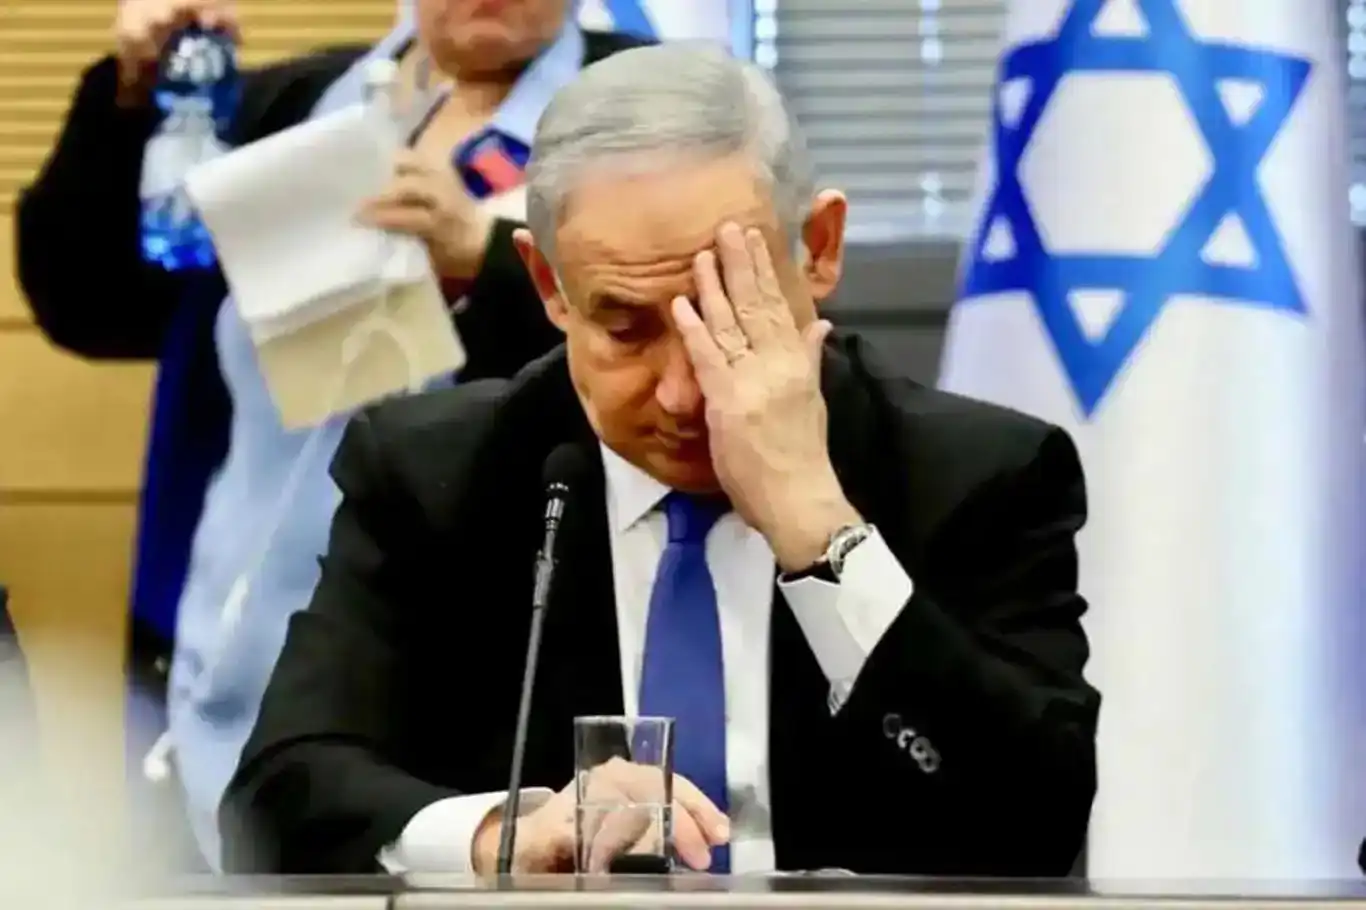 Xwepêşandanên li zanîngehên Amerîkayê siyonîst Netanyahuyê endîşedar kir